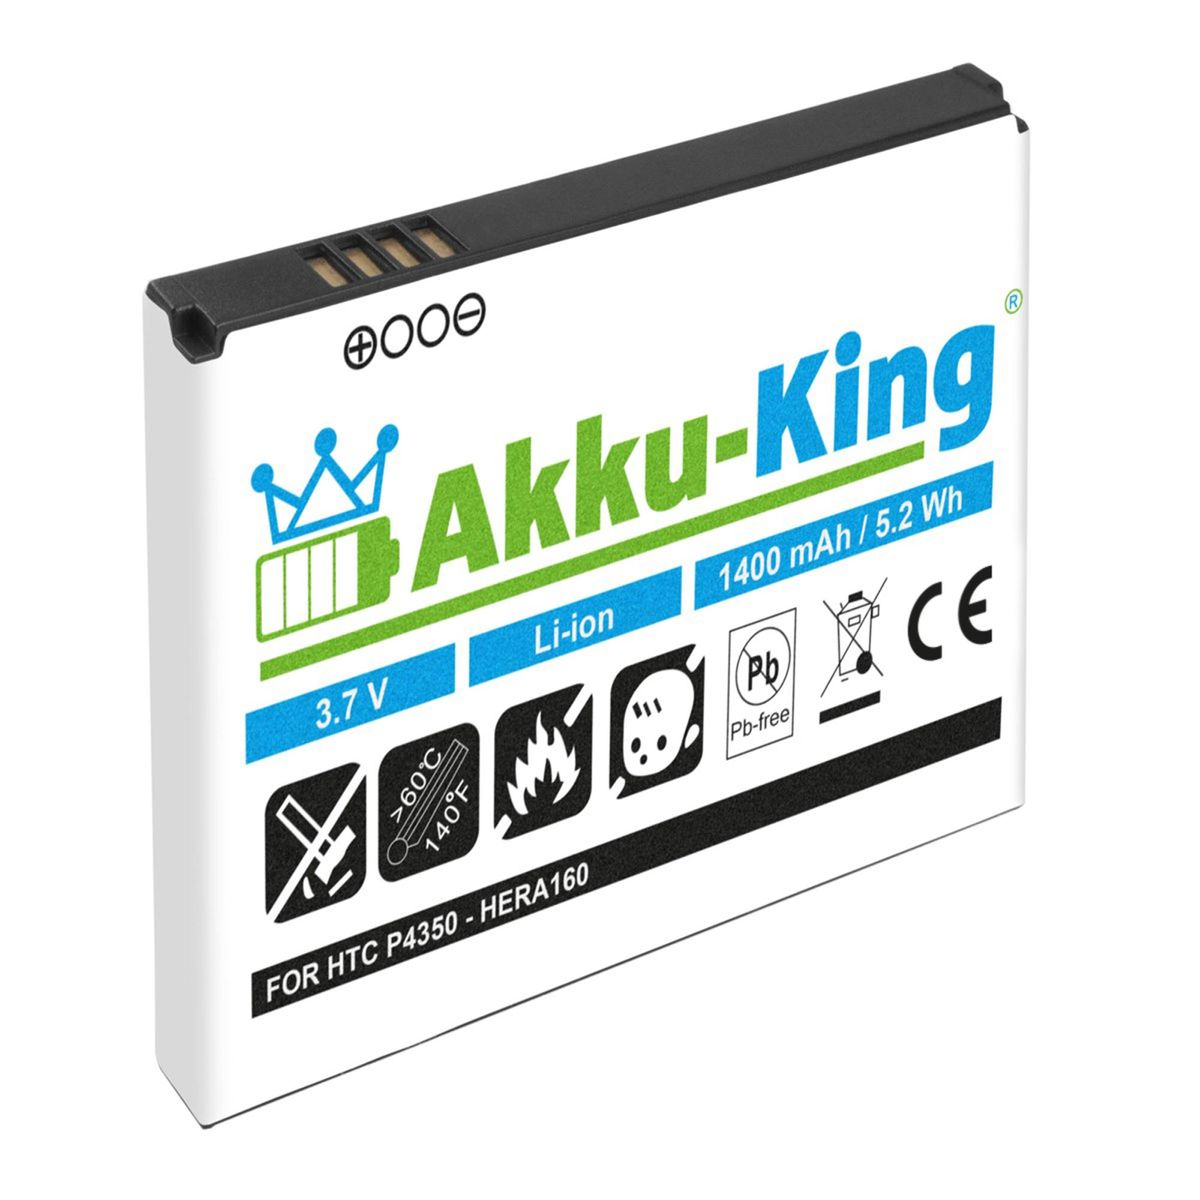 3.7 AKKU-KING Akku Volt, S190 kompatibel BA Handy-Akku, Li-Ion HTC 1400mAh mit